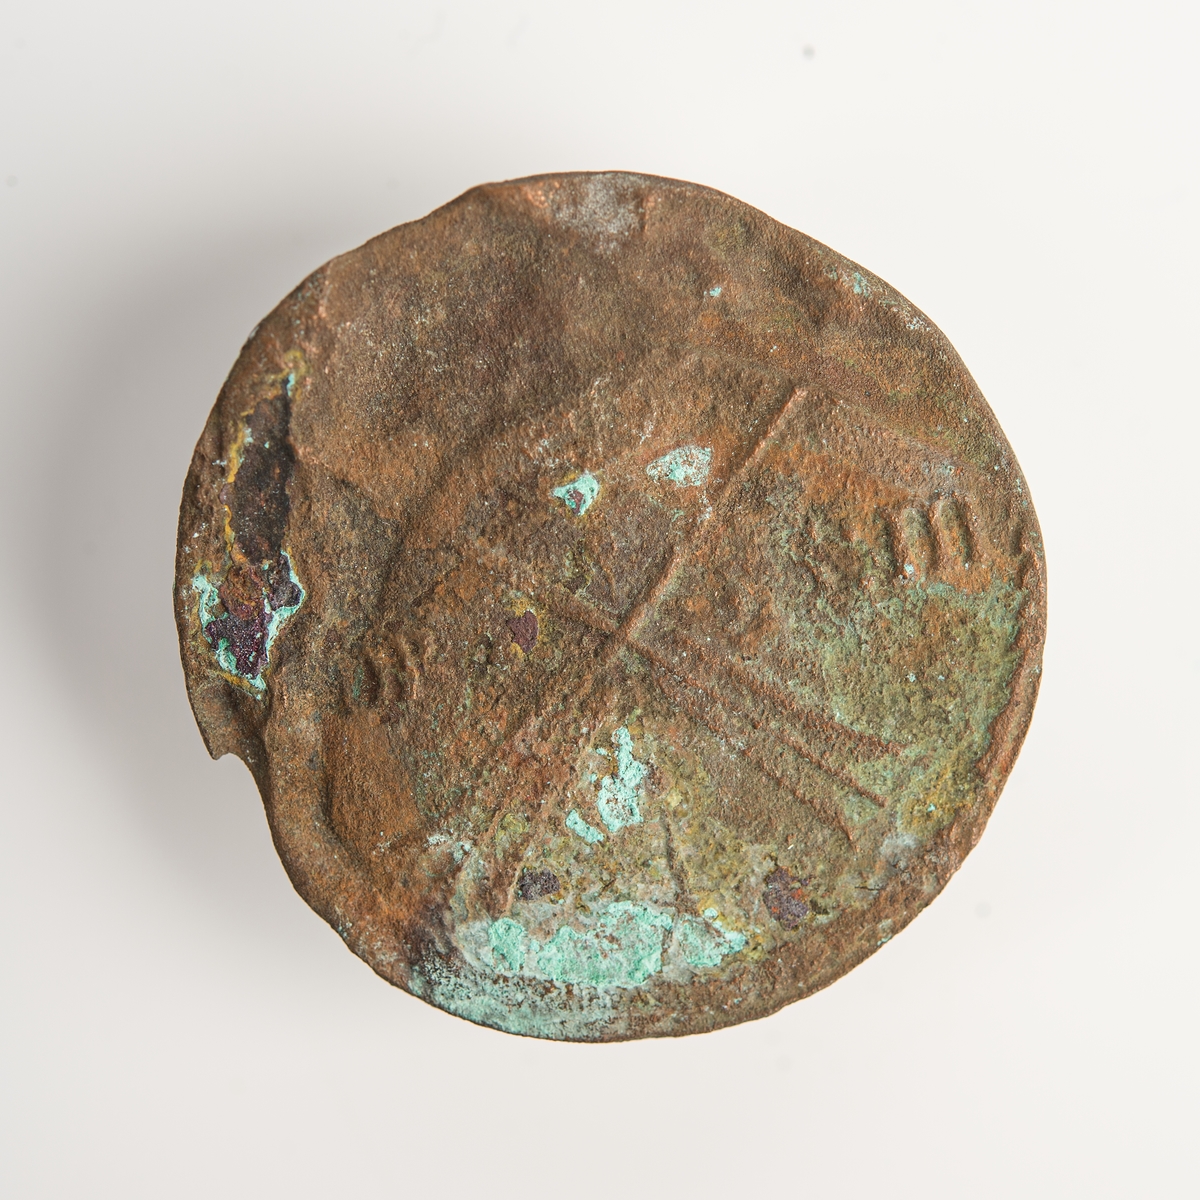 Avesta, 1 öre SM. Oläsligt årtal. Myntet präglades mellan 1669 och 1686.